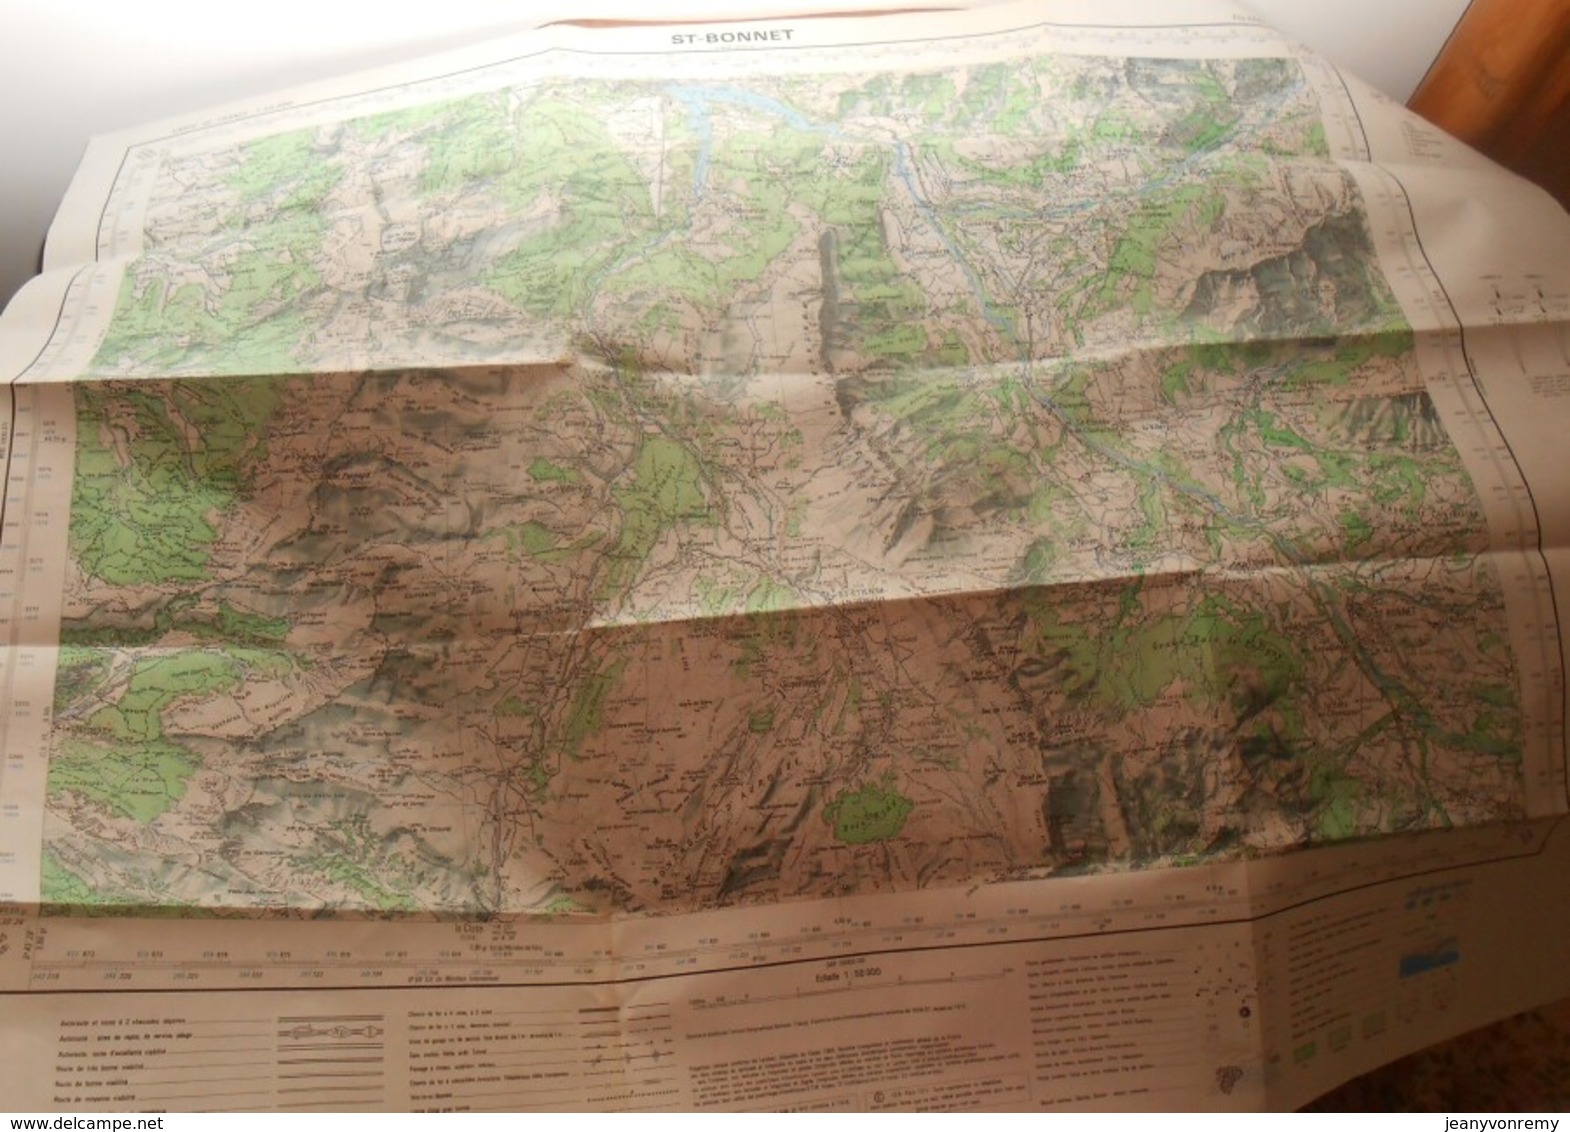 Carte Topographique. Saint-Bonnet. Hautes Alpes. 1975. - Topographical Maps